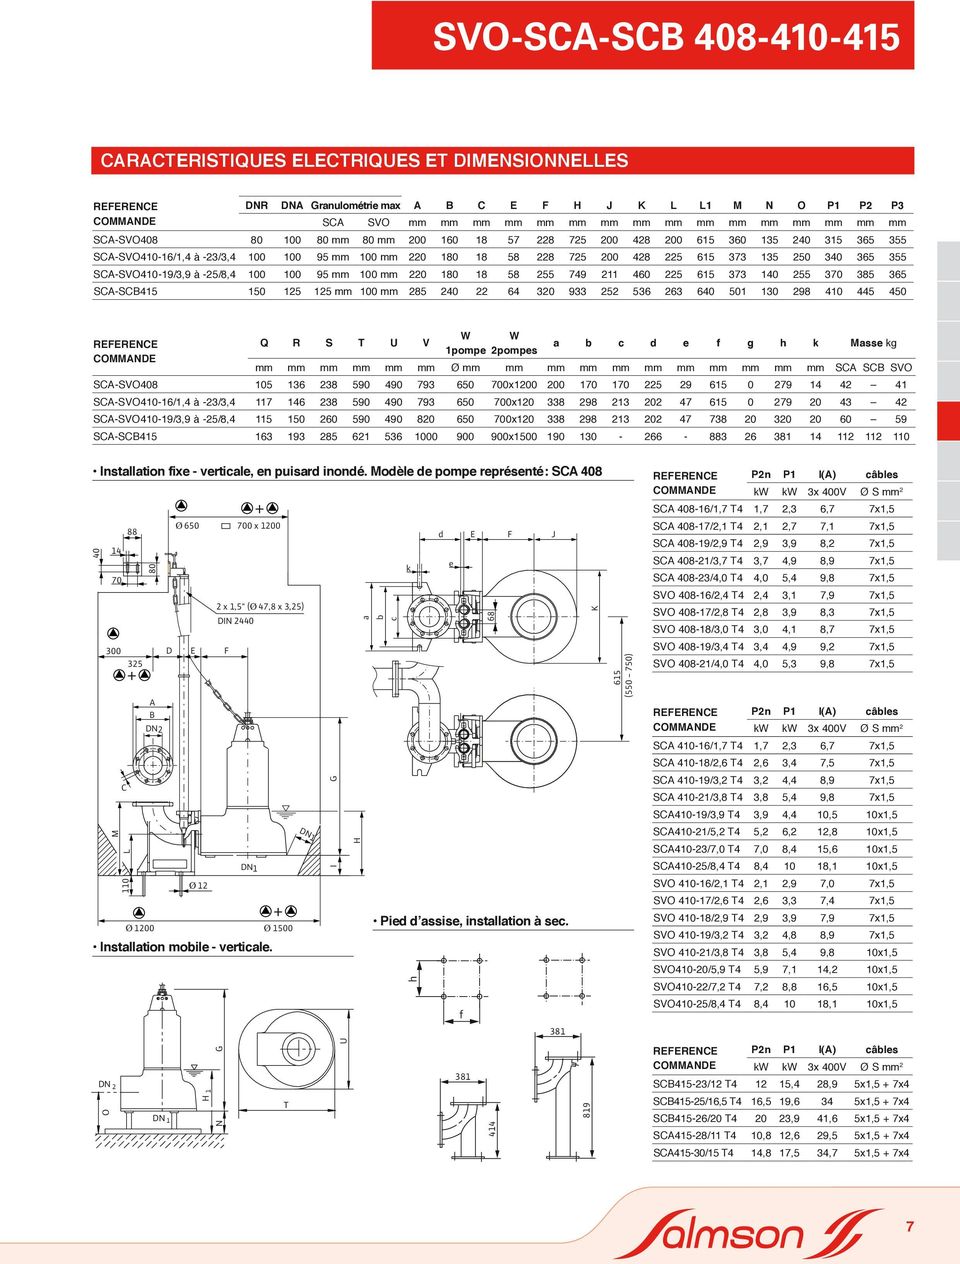 mm mm mm mm mm mm mm mm SCA SCB SVO SCA-SVO 9 9 79 7x 7 7 9 79 SCA-SVO-/, à -/, 7 9 9 79 7x 9 7 79 SCA-SVO-9/,9 à -/, 9 9 7x 9 7 7 9 SCA-SCB 9 9 9x 9 - - Installation fixe - verticale, en puisard